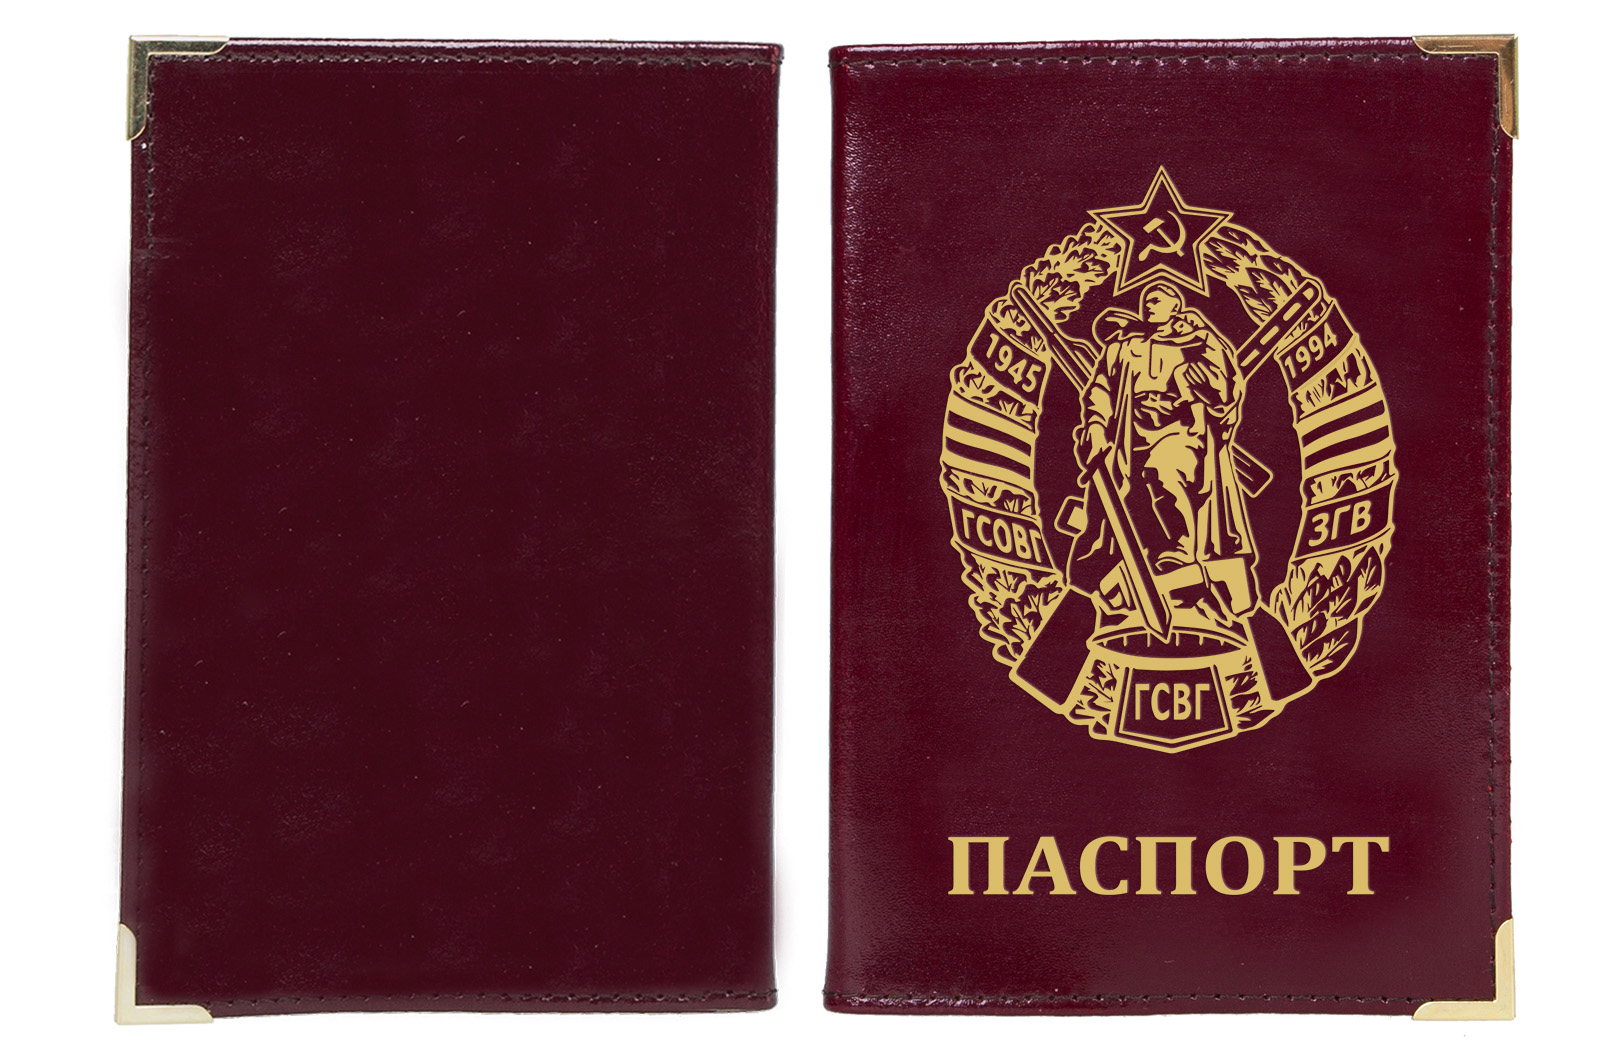 Недорого купить обложку на паспорт с тиснением "ГСВГ"